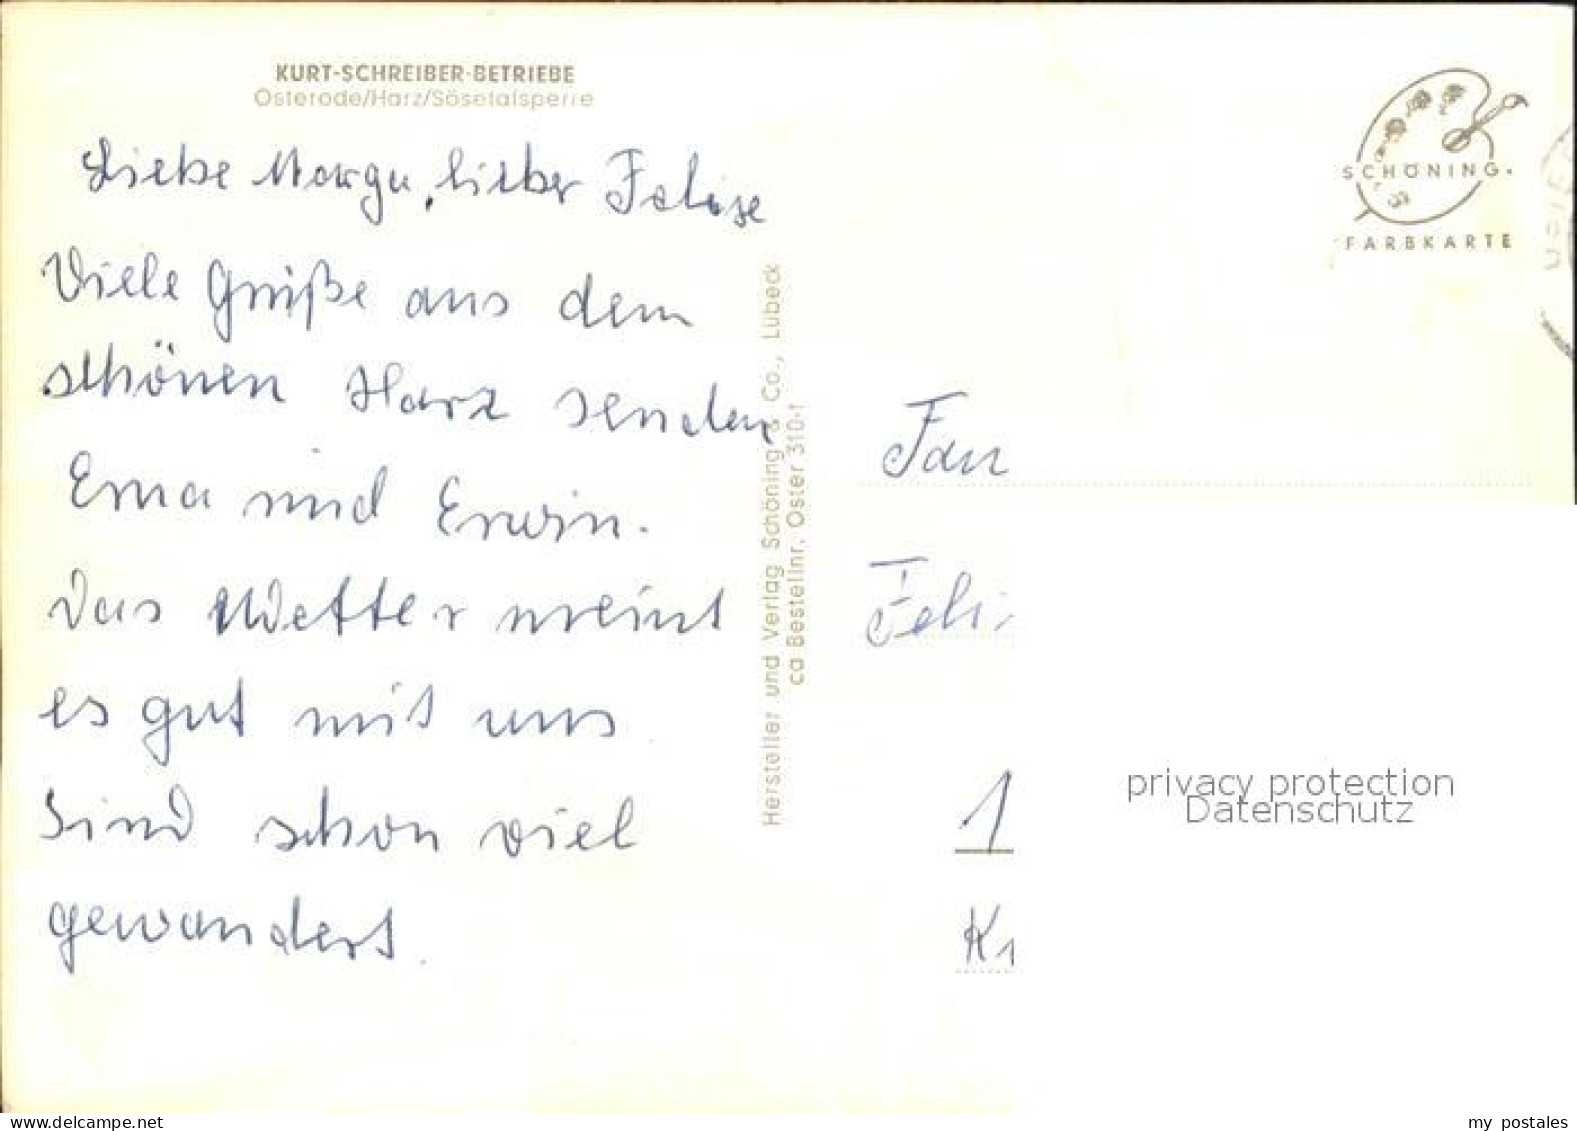 72557492 Osterode Harz Kurt Schreiber Betriebe Soesetalsperre Osterode Am Harz - Osterode